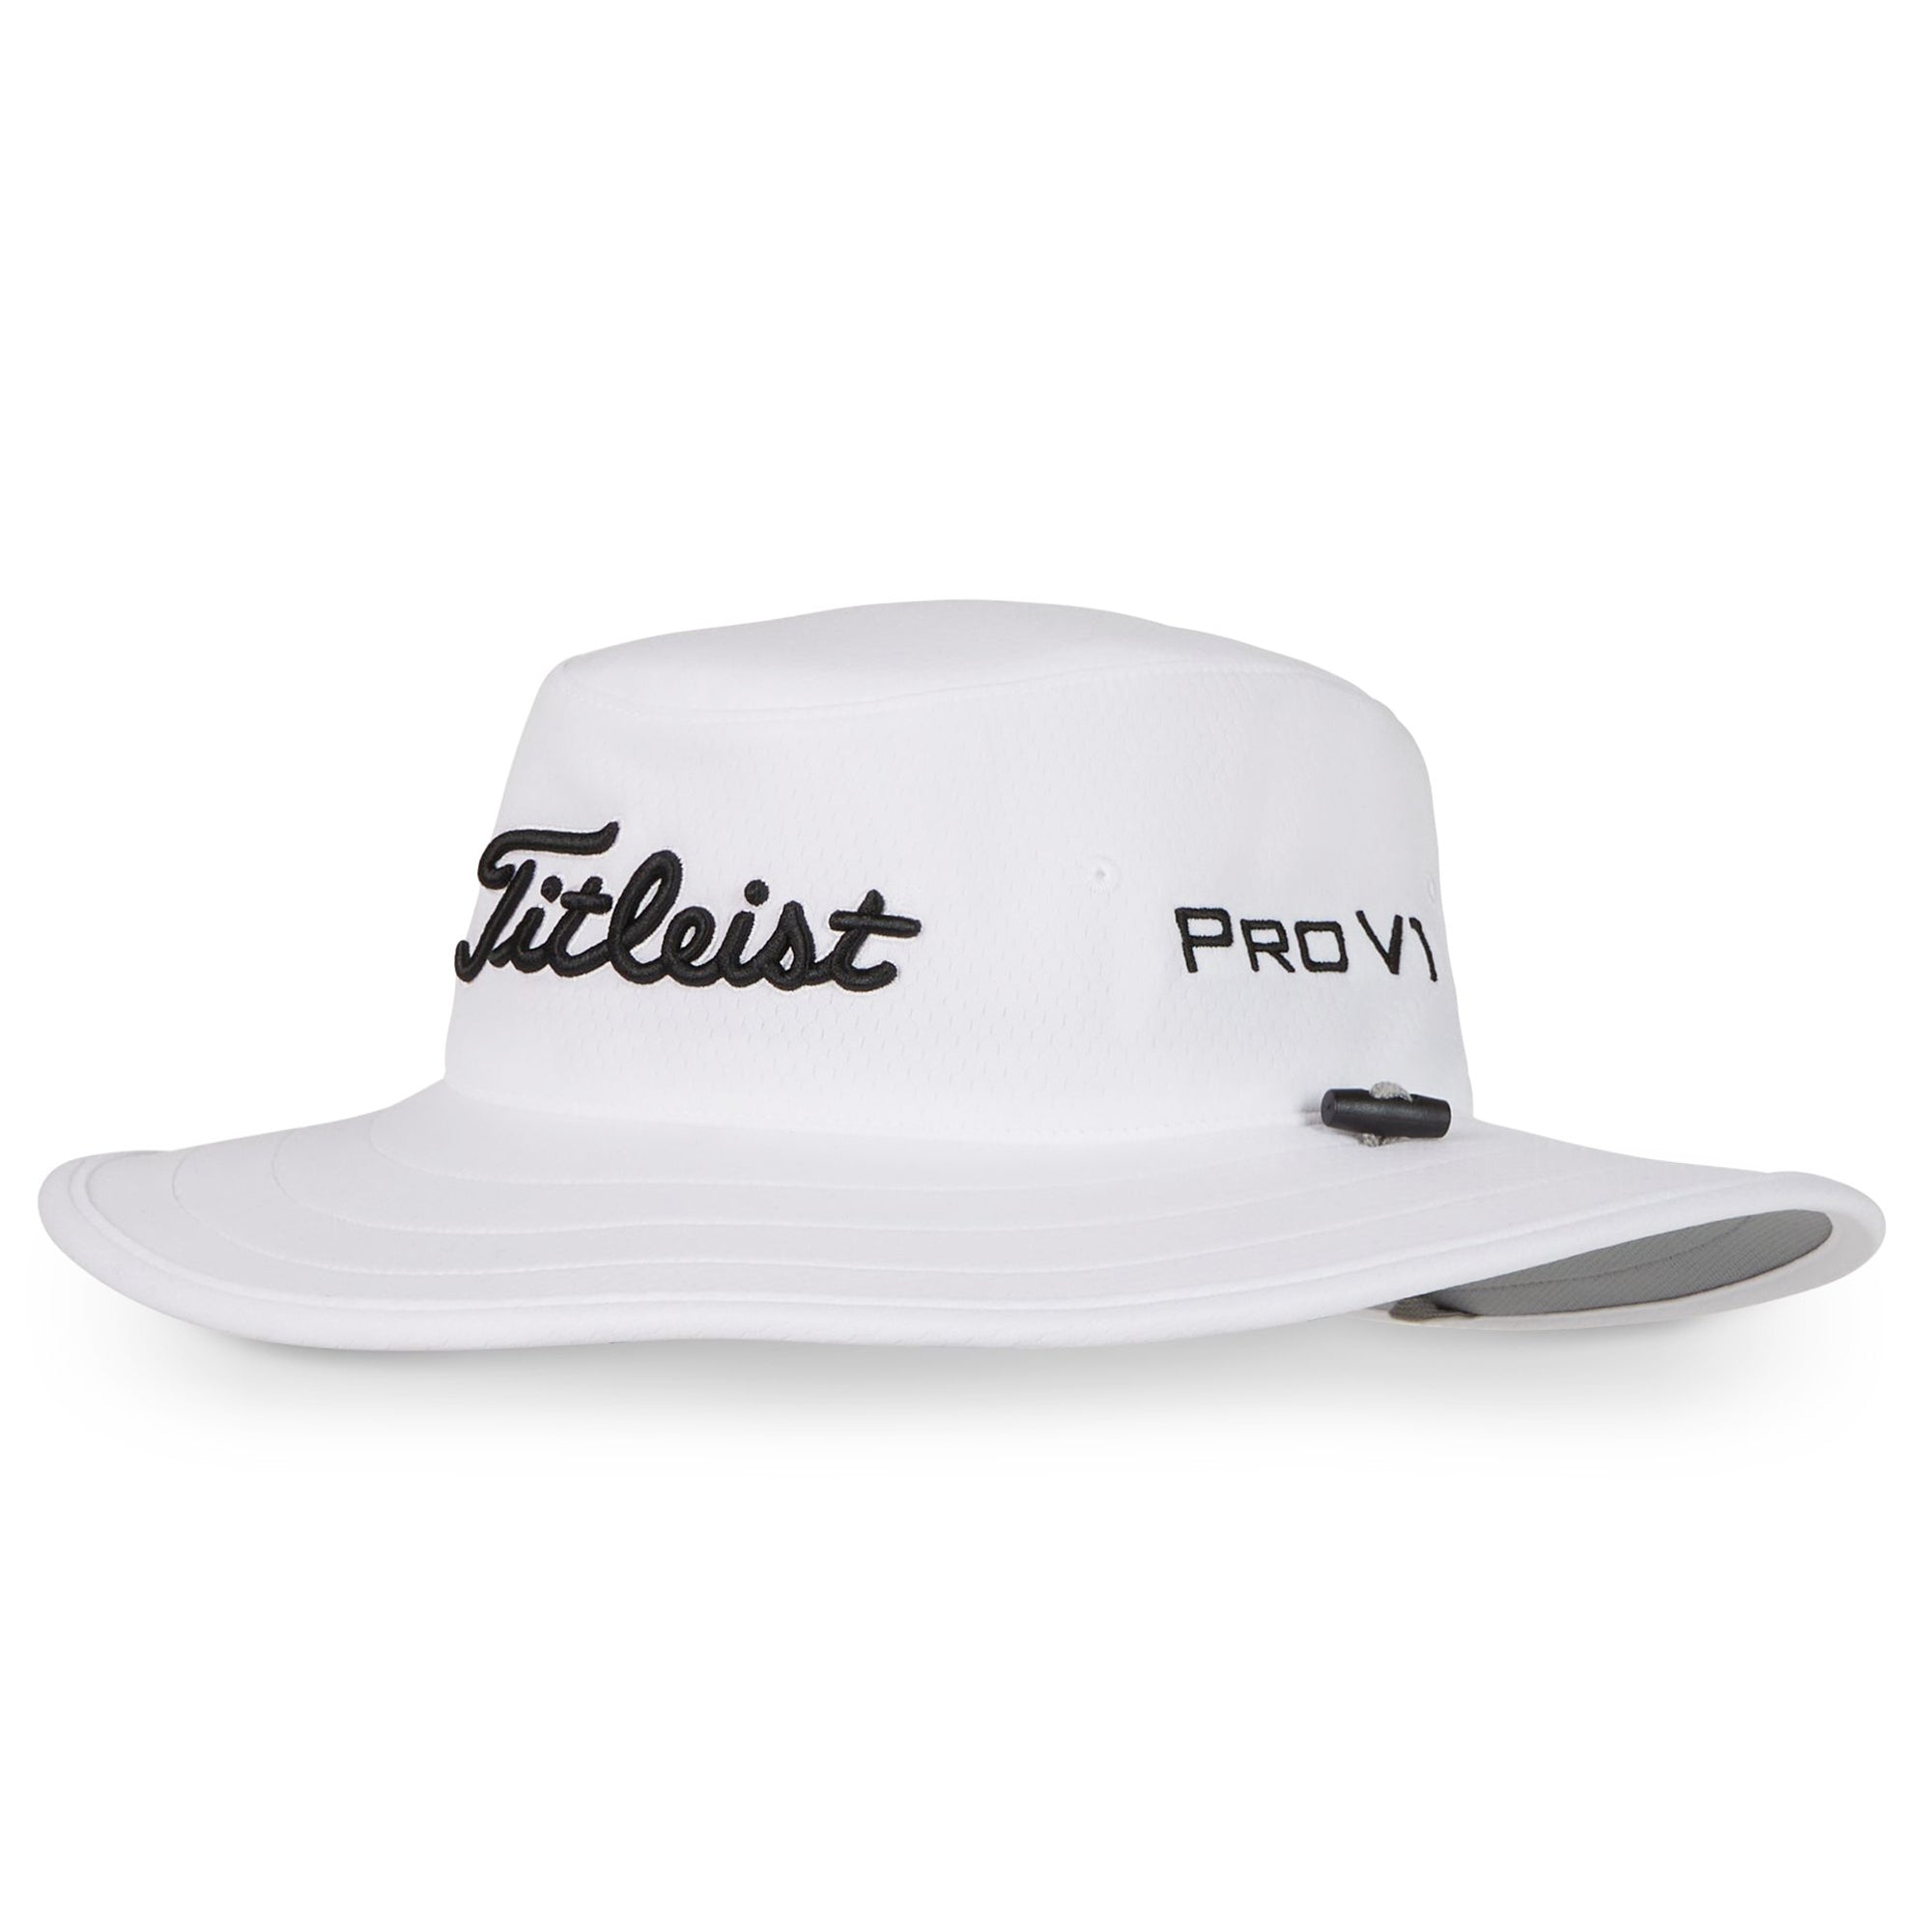 titleist-tour-aussie-wide-brim-hat-th24tause-10-white-black